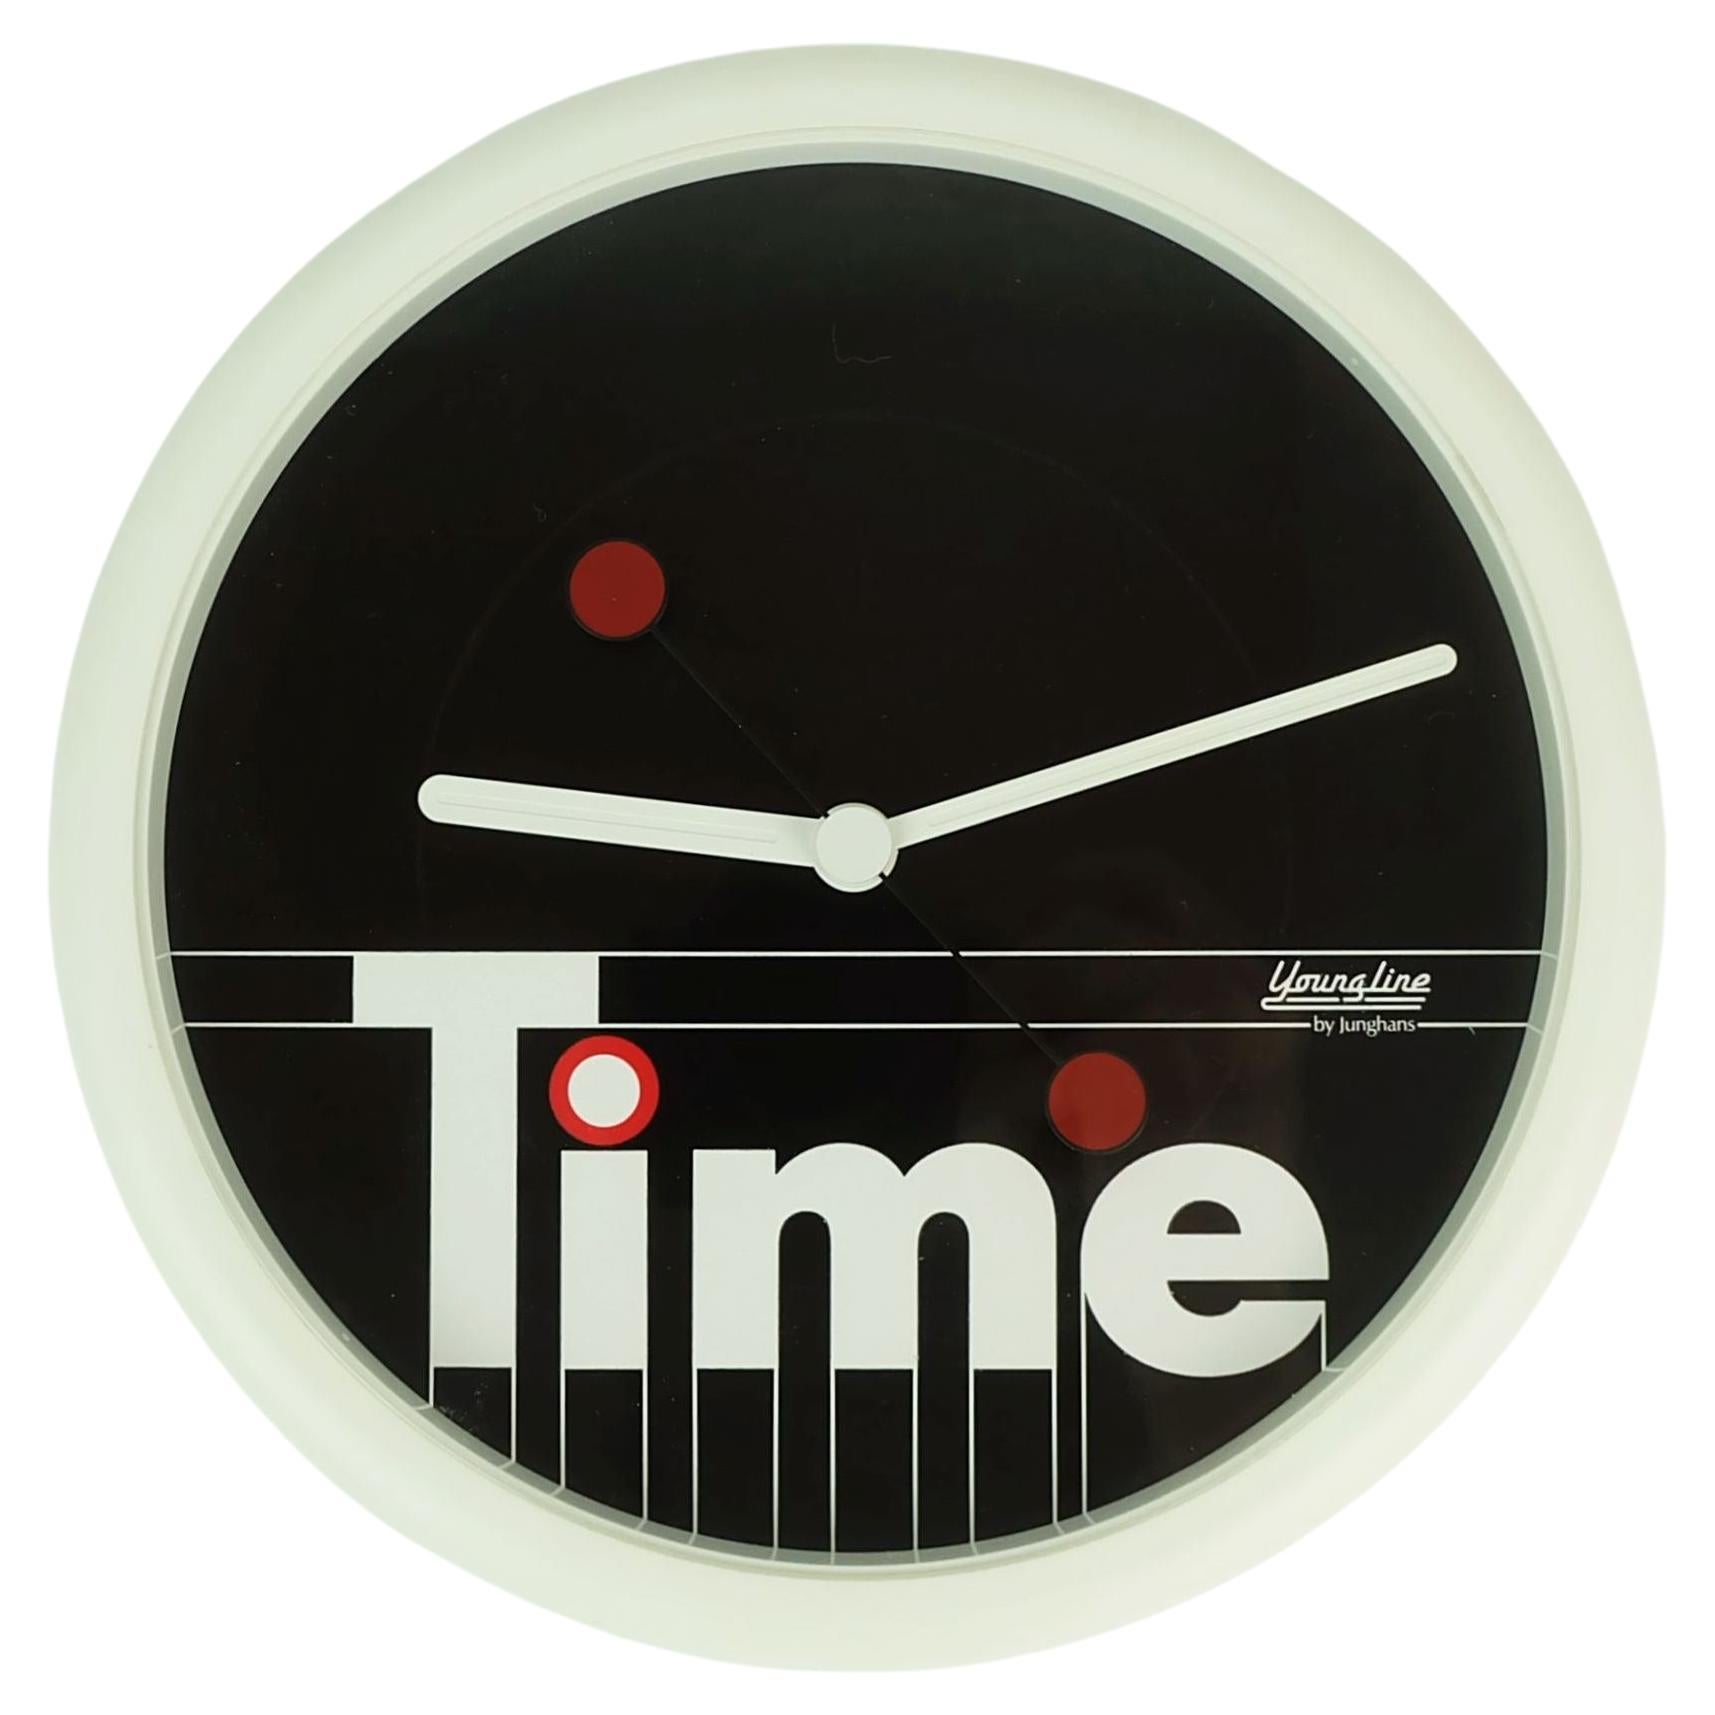 Rare horloge de cuisine WALL CLOCK jeuneline junghans des années 1980 au design postmoderne 